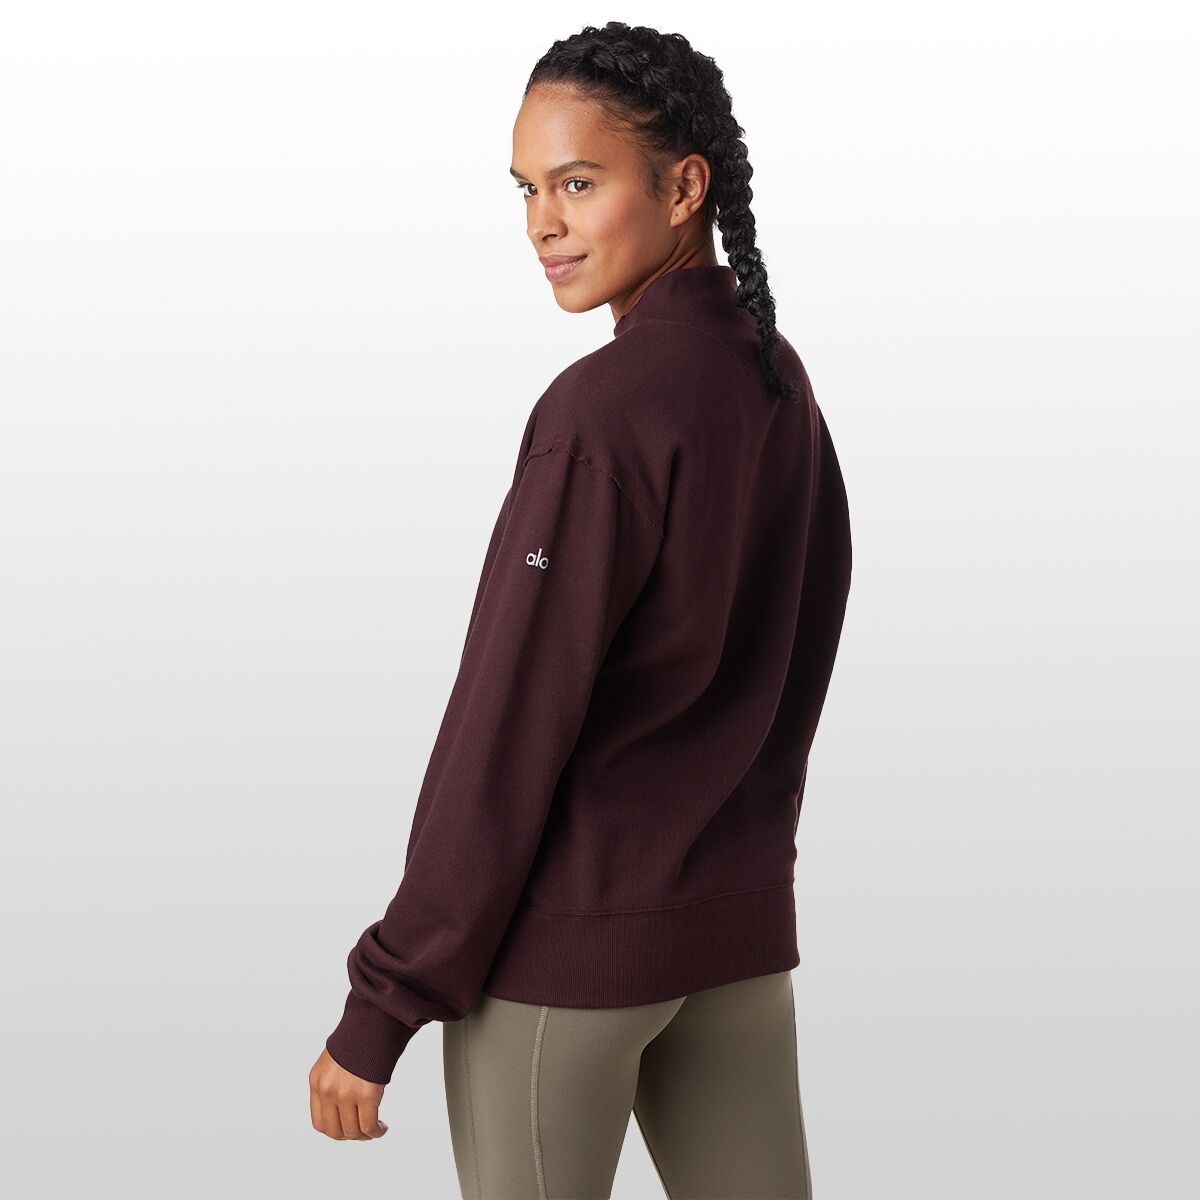 Alo Yoga Freestyle Sweatshirt - Bergdorf Goodman